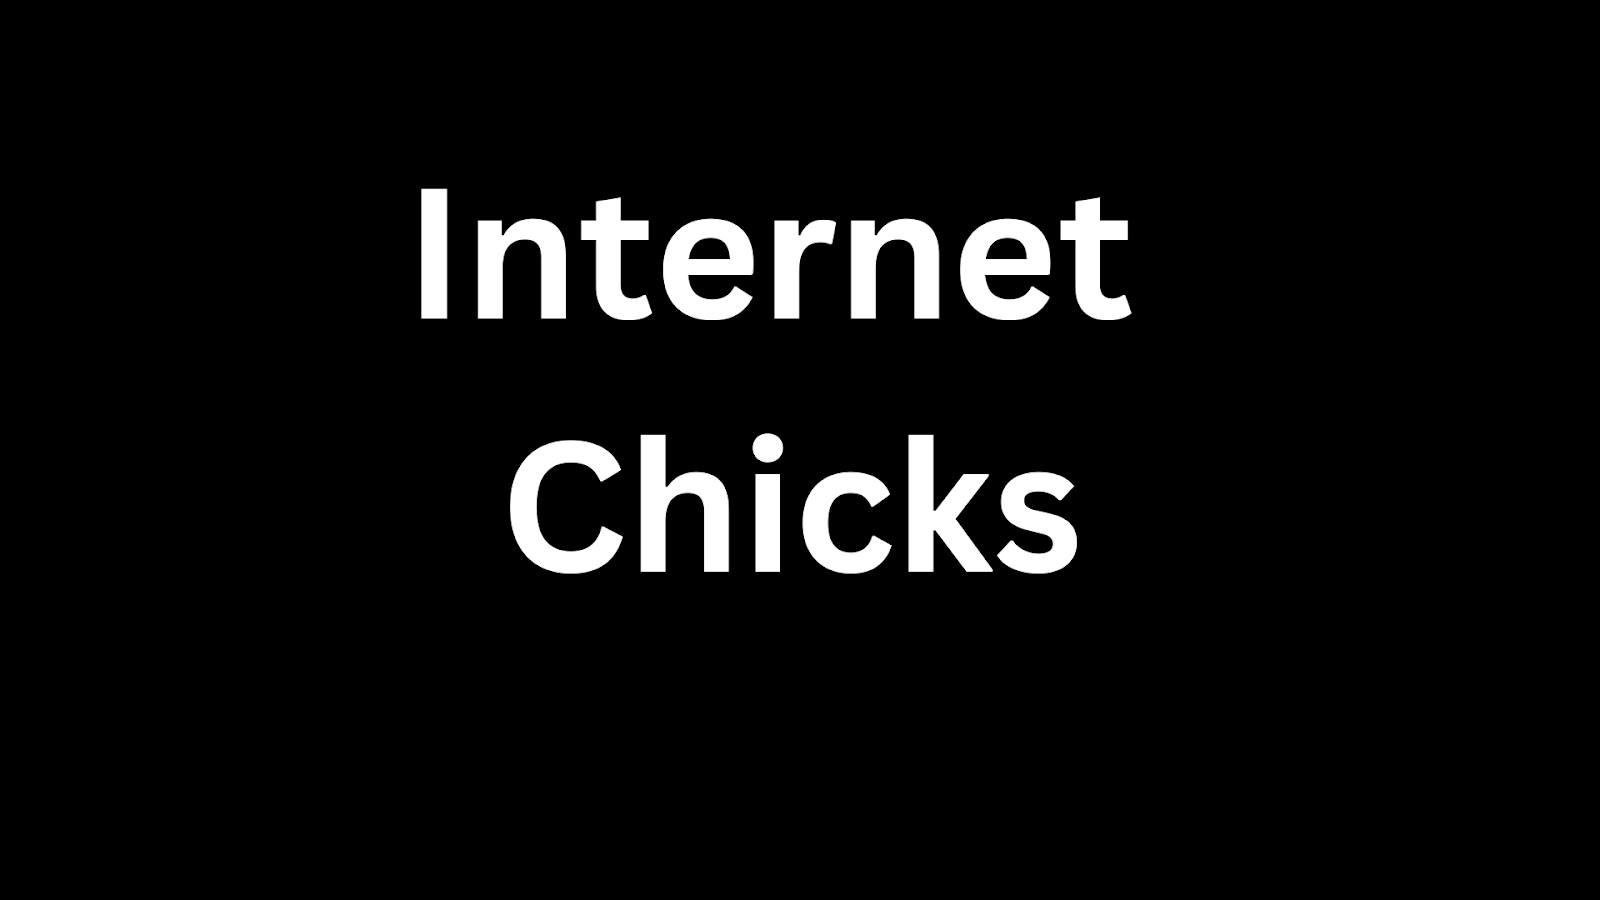 Internet Chicks
